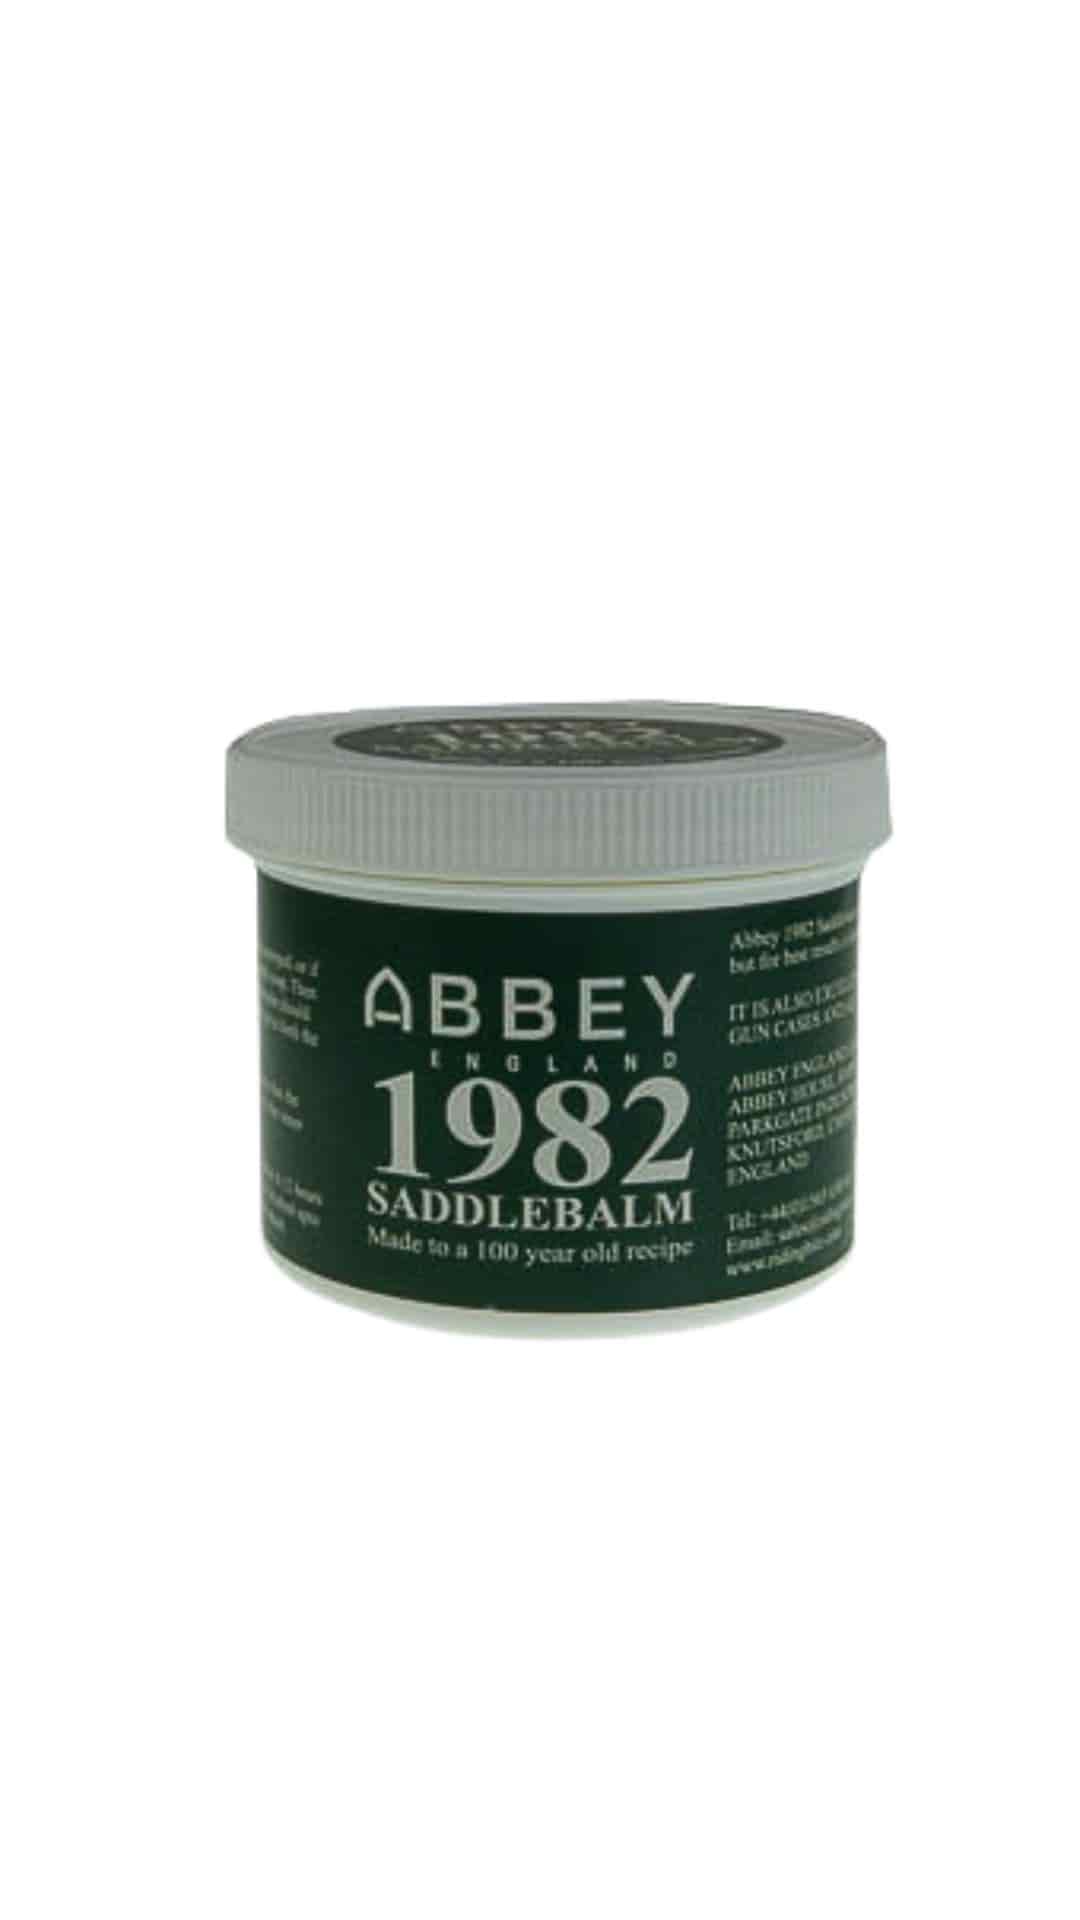 Abbey saddle balm